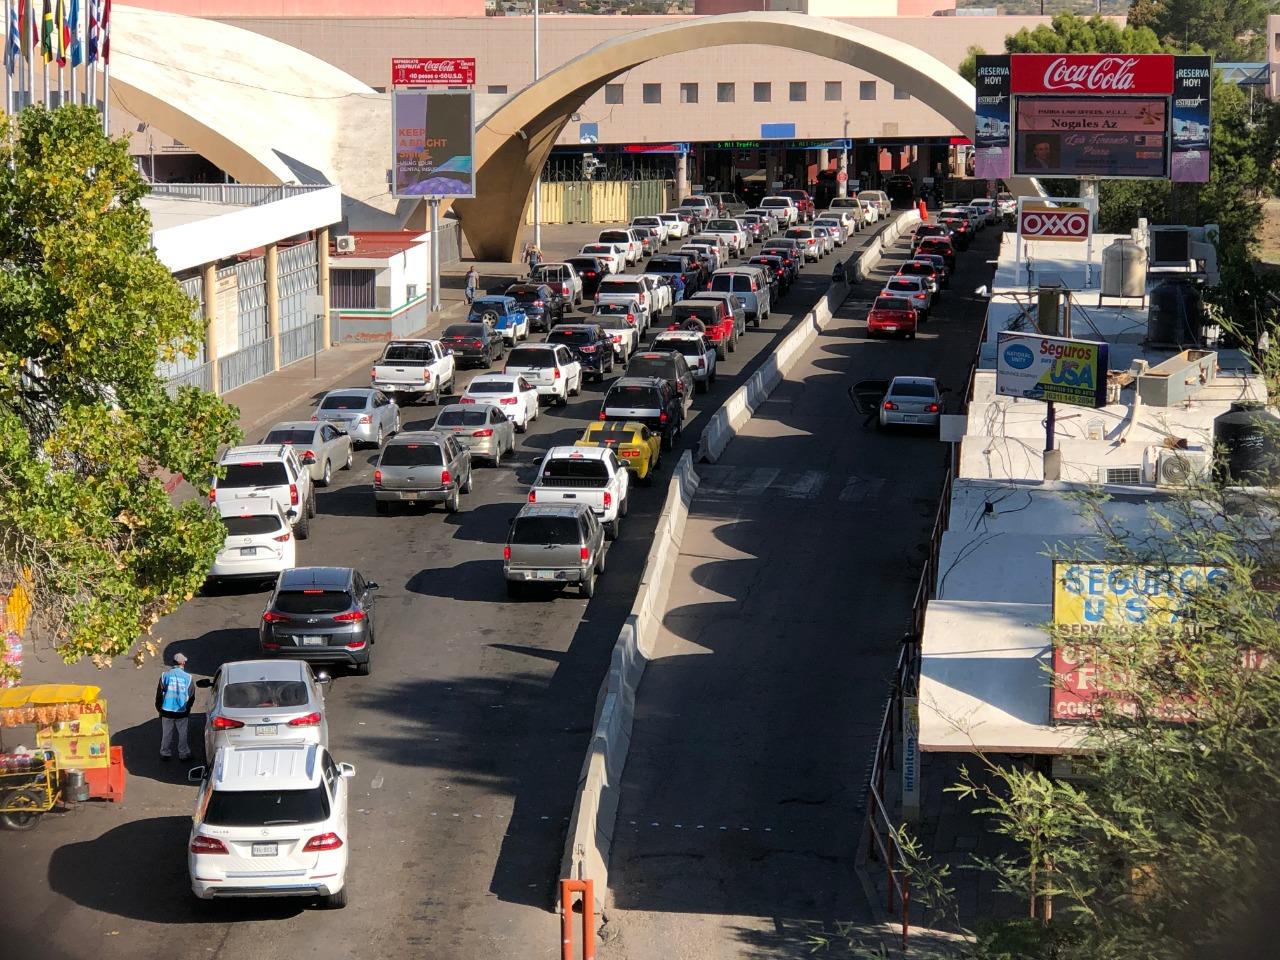 Ampliación de cierre de frontera se resentirá mayormente en el sur de Arizona